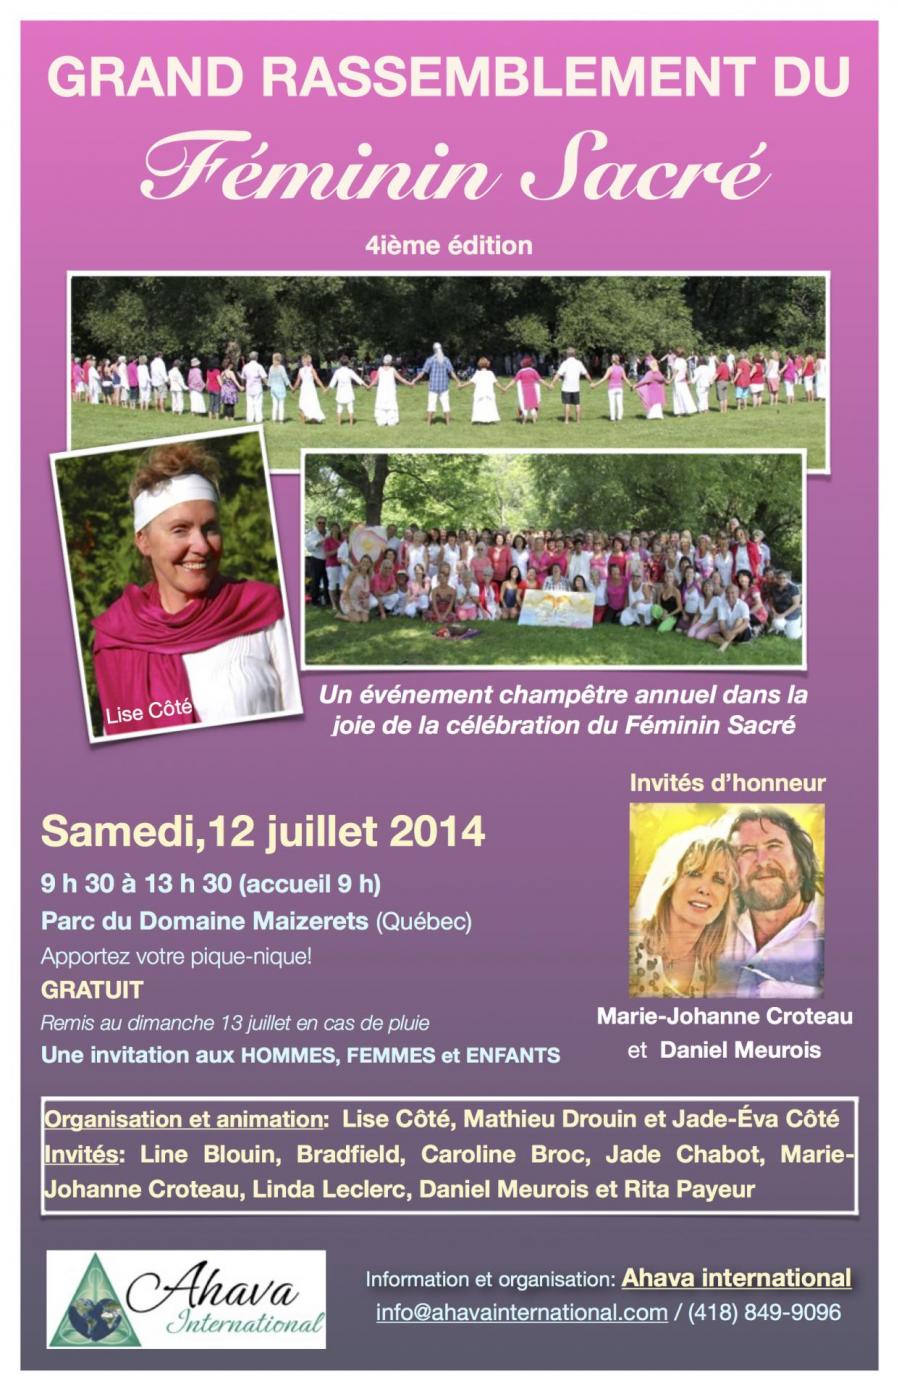 Affiche rassemblement femininsacre 2014 v2 3